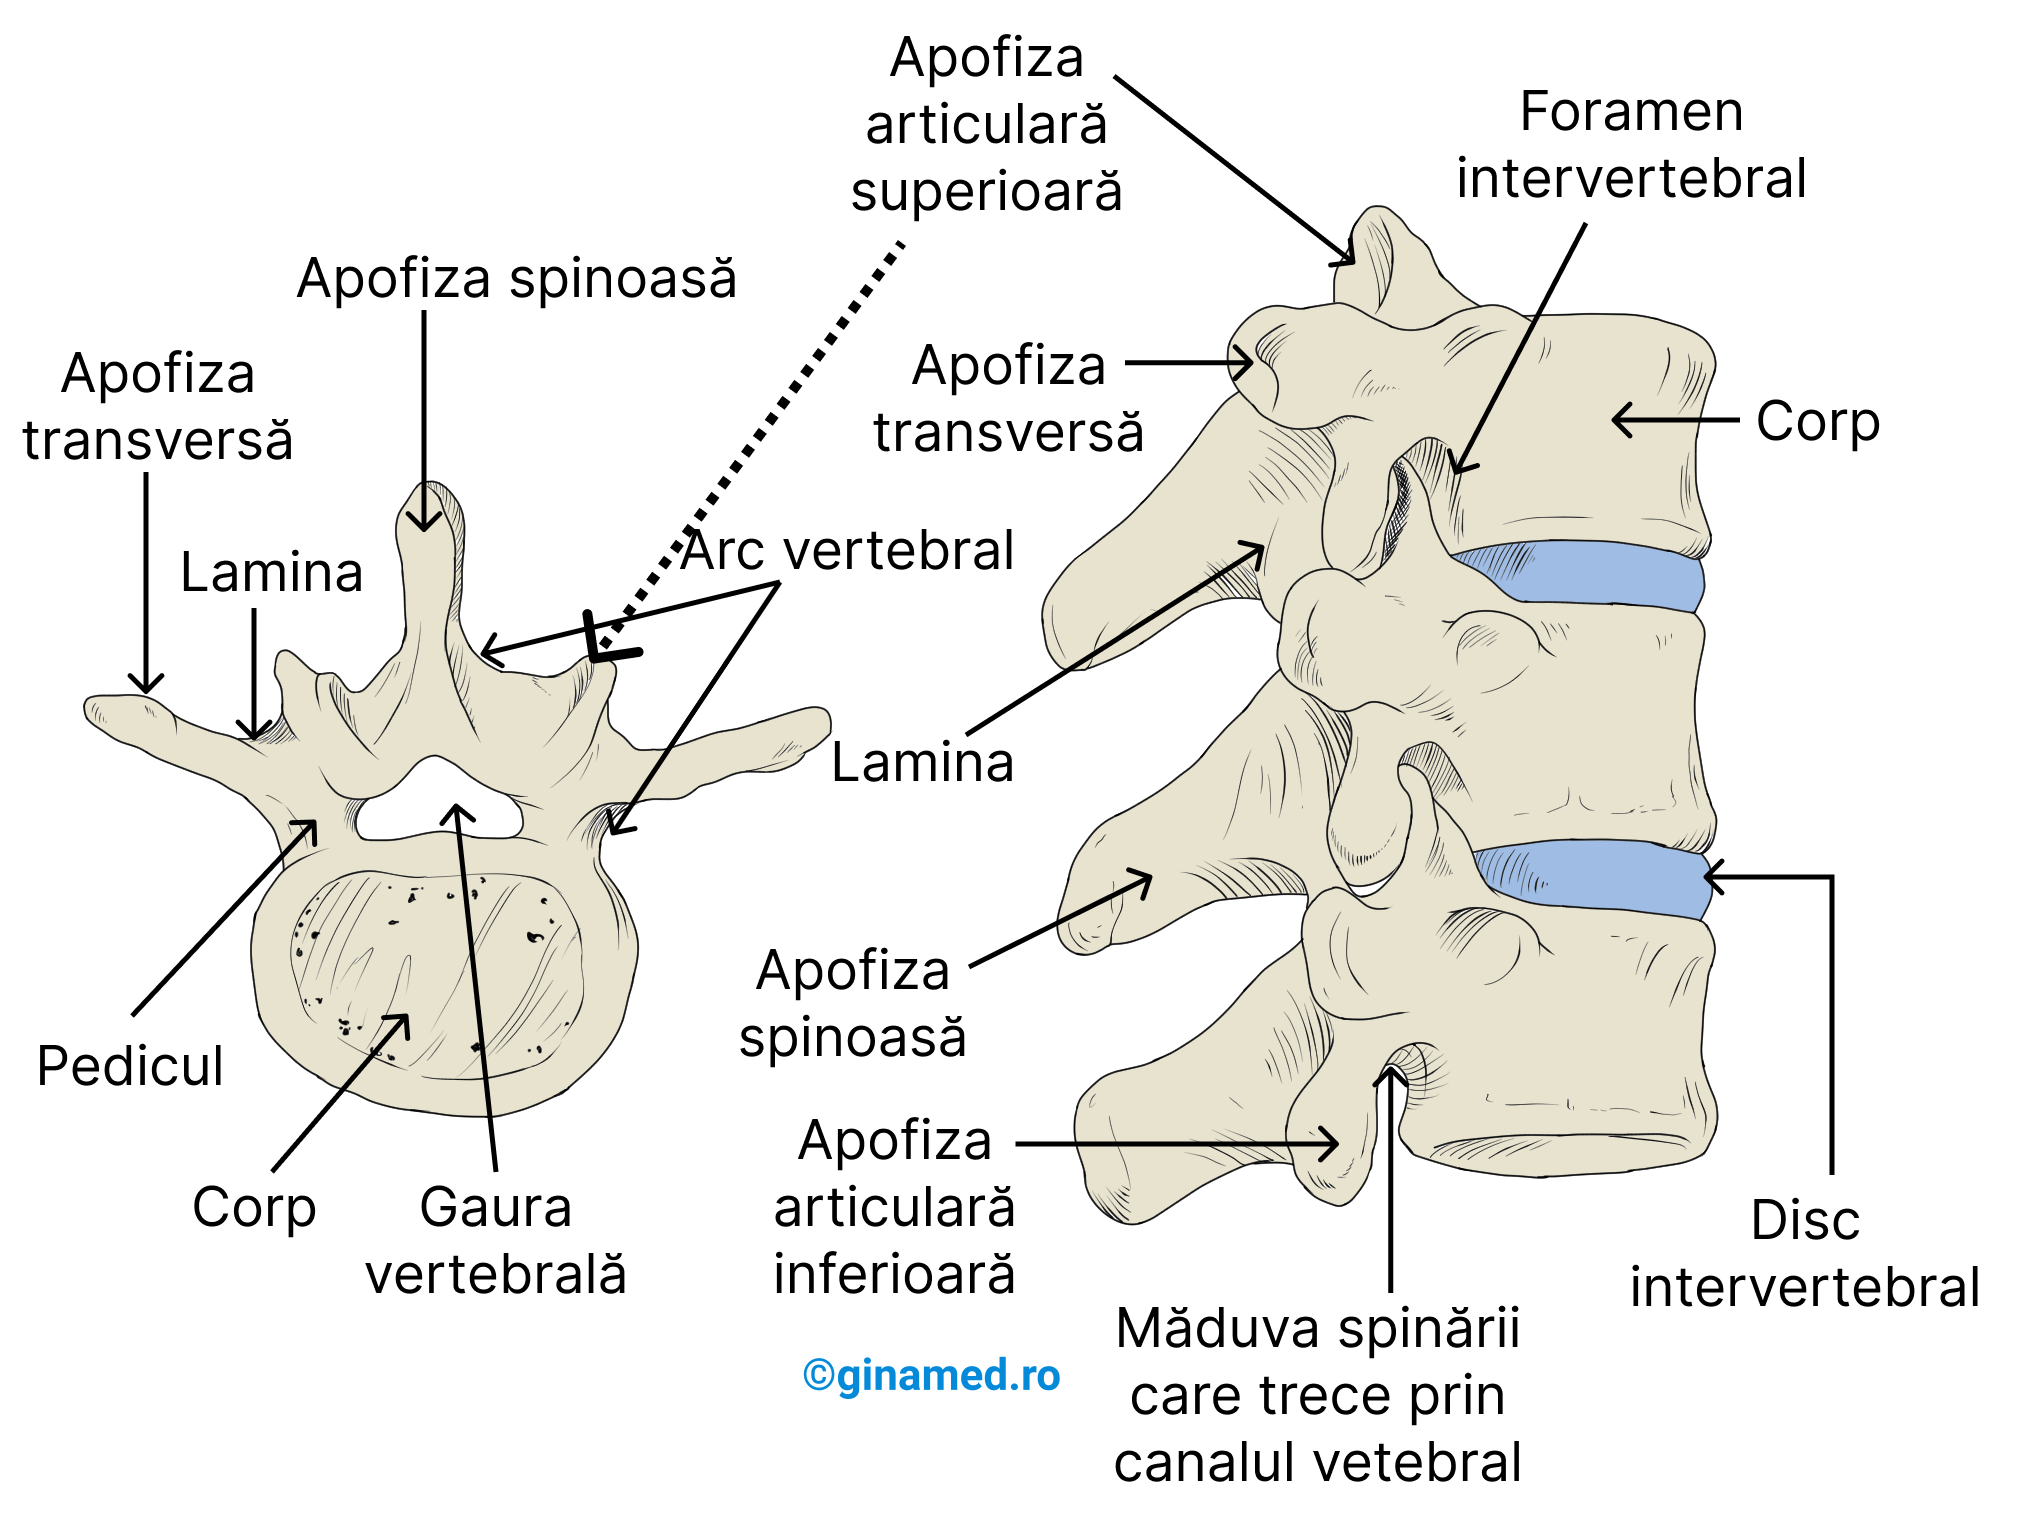 Imaginea din stânga - o vertebră tipică privită de sus. Imaginea din dreapta - vedere laterală a 3 vertebre și structurile asociate.